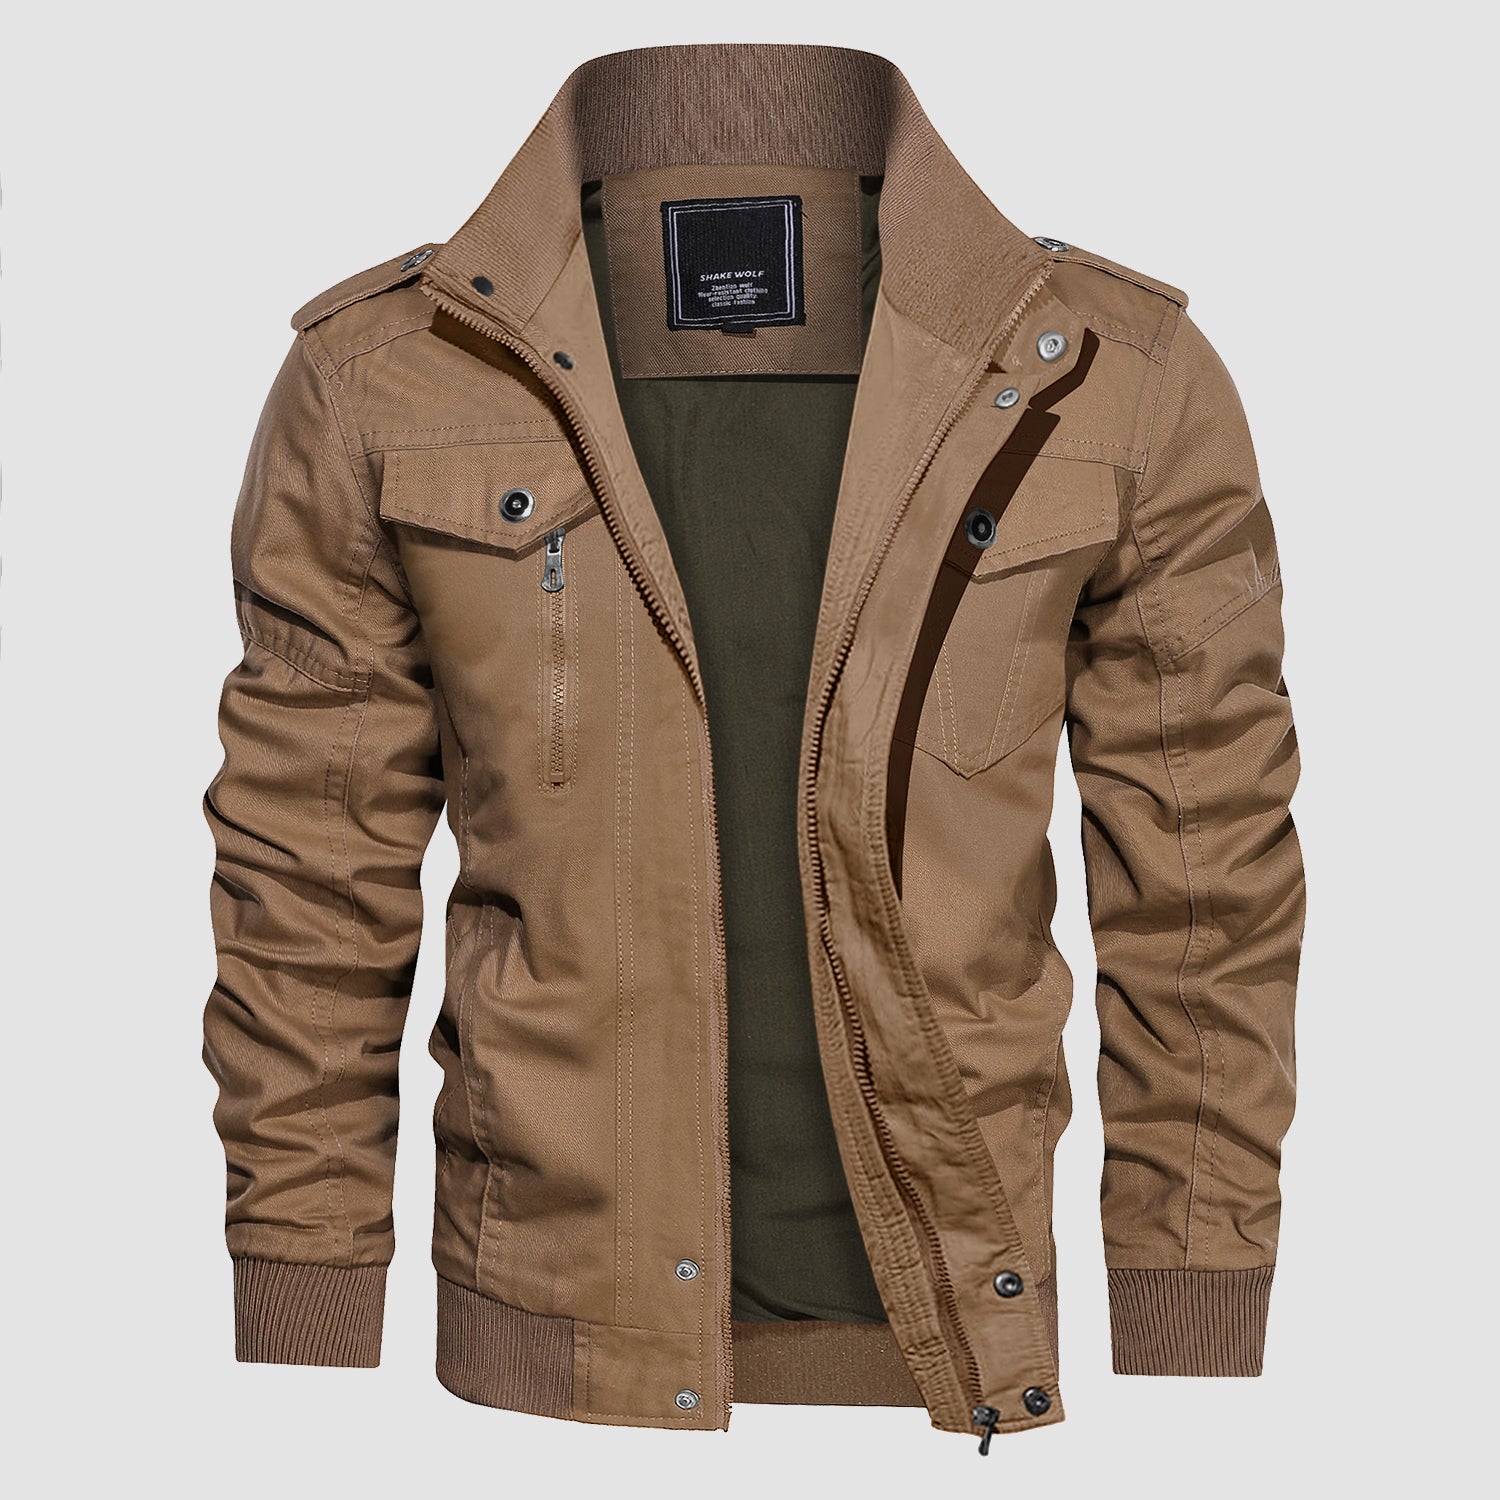 Hfyihgf Men's Cotton Line Shirt Jacket Lightweight Long Sleeve Button Down  Trucker Jacket Outwear Spring Fall Work Jackets(Gray,3XL) - Walmart.com